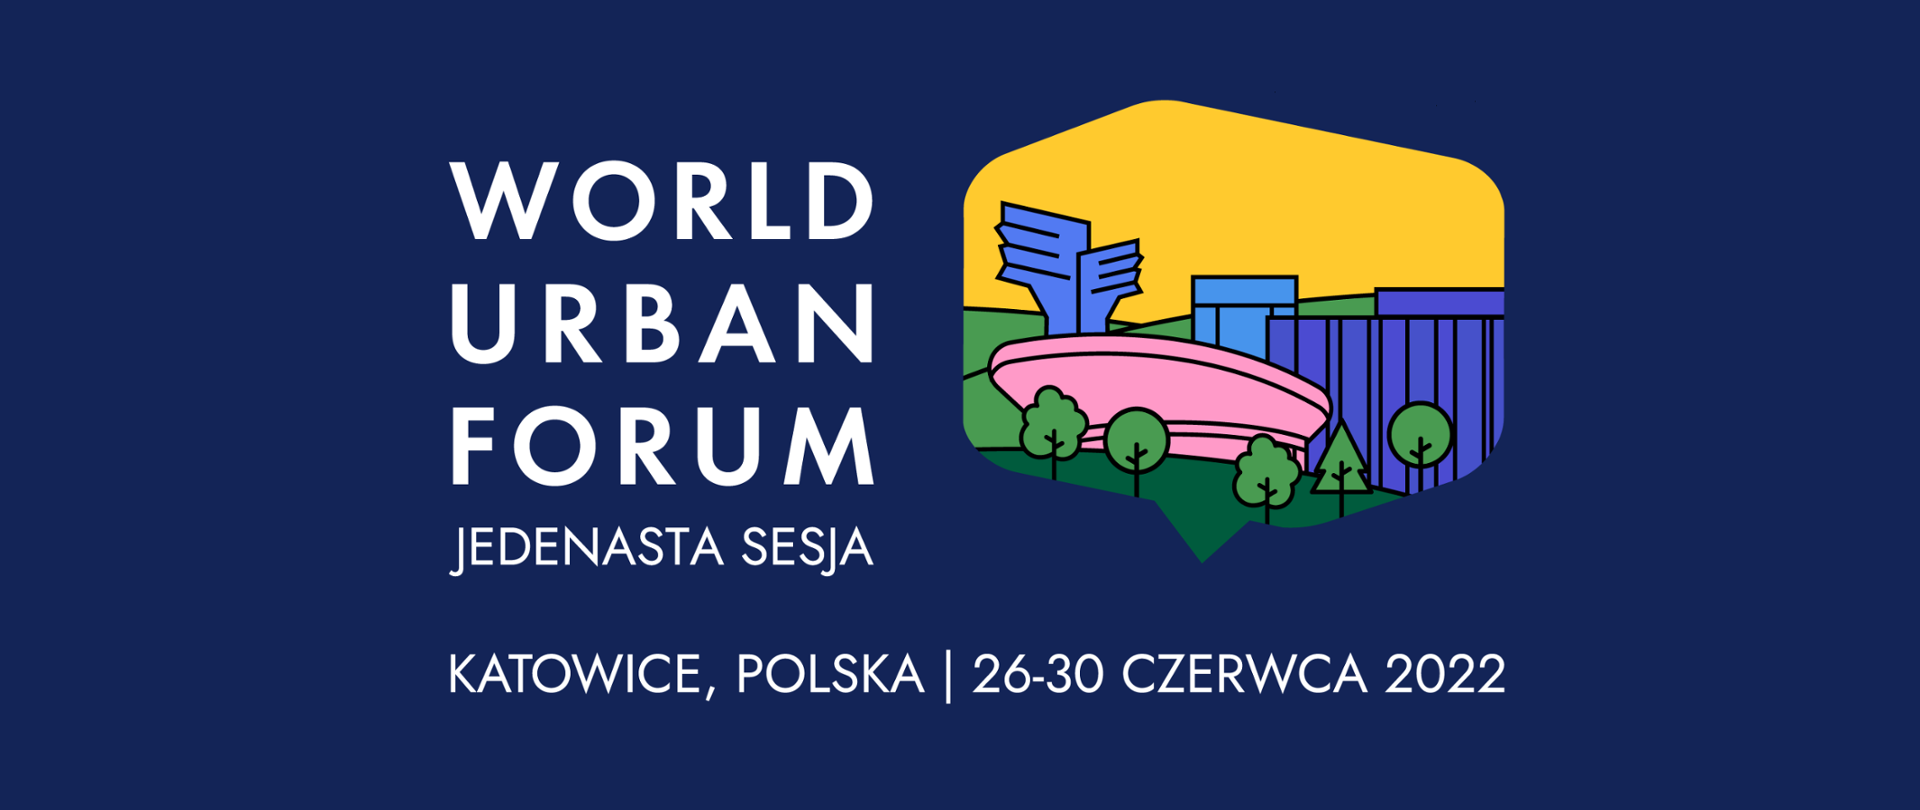 logotyp Światowego Forum Miejskiego w Katowicach w 2022 r.